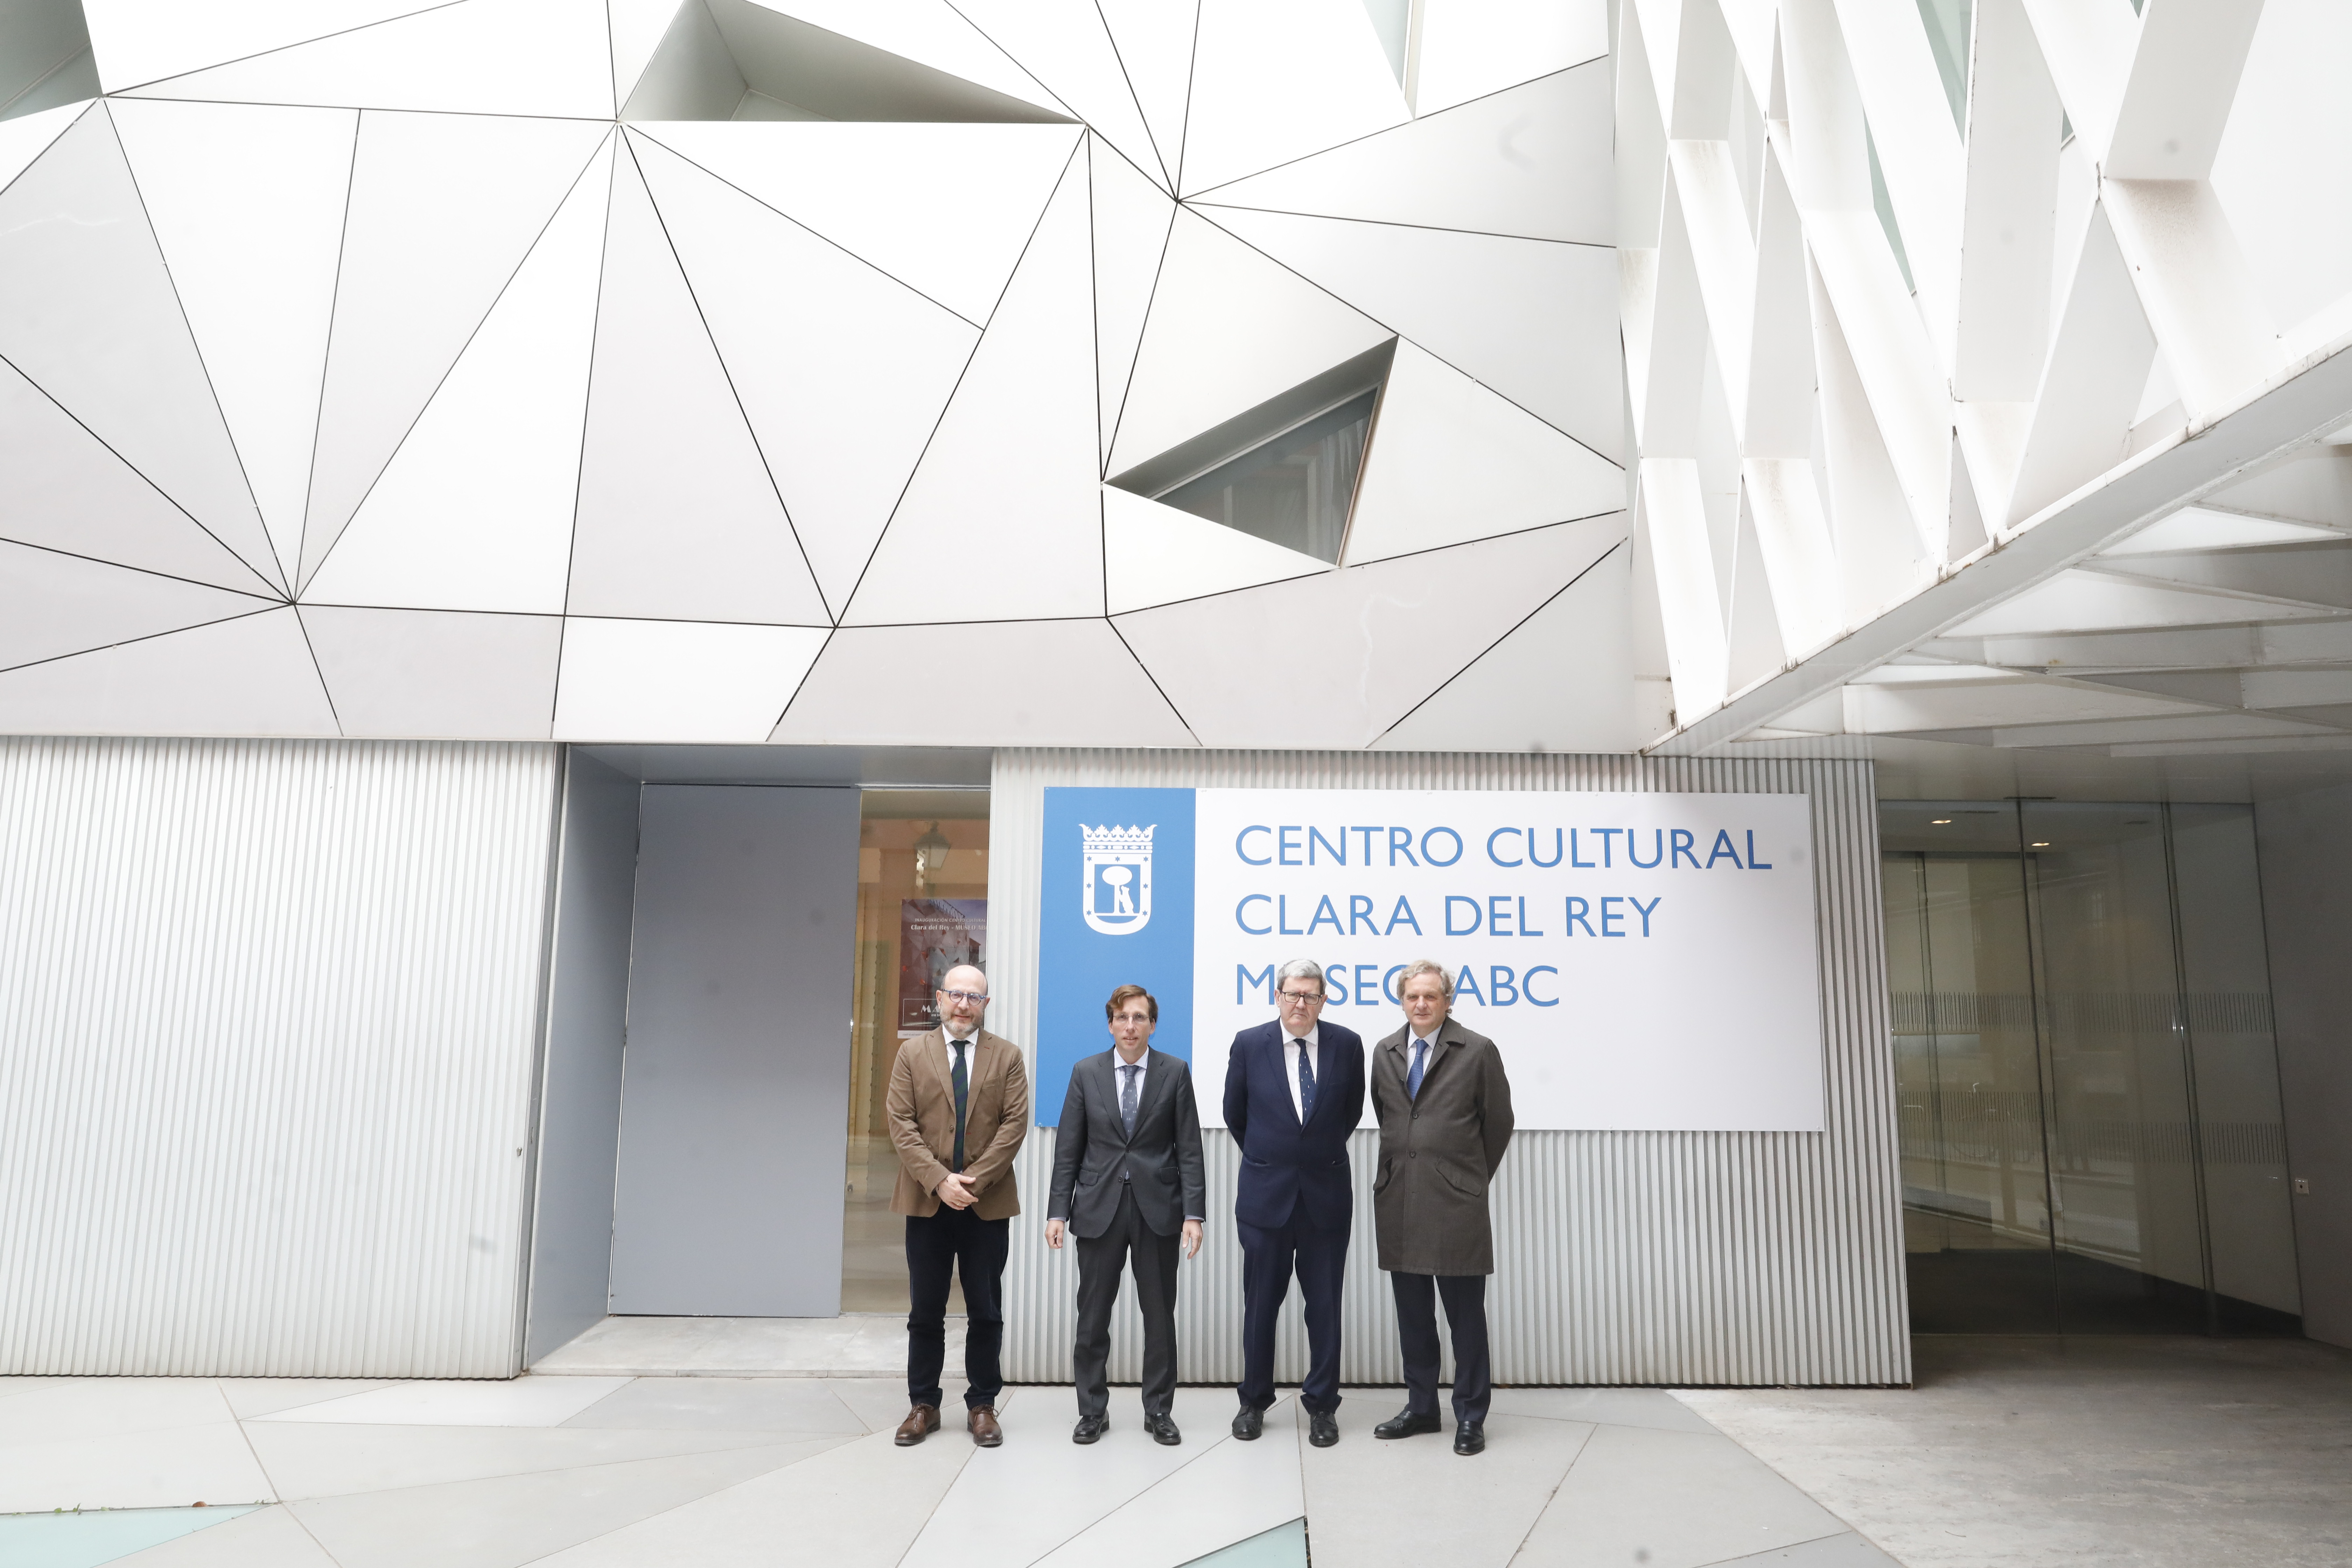 Almeida junto a otros asistentes a la inauguración de esta nuevo espacio cultural municipal, el Centro Cultural Clara del Rey Museo ABC